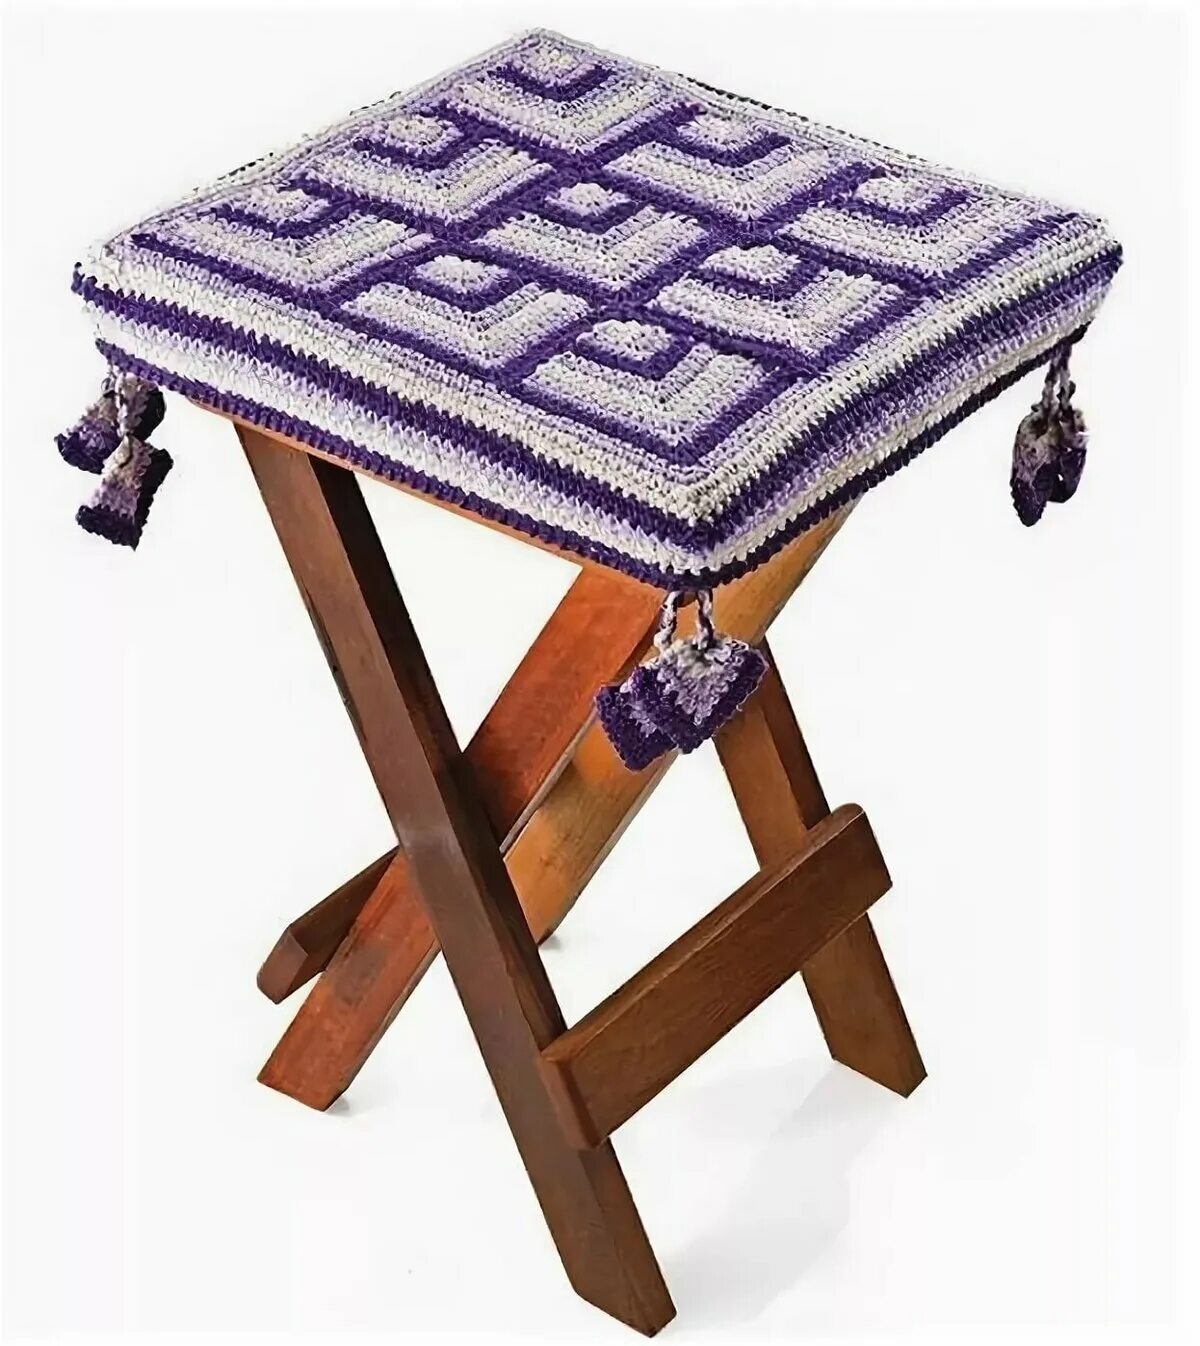 Сидушки квадрат. Сидушка-чехол на табуретку квадратная крючком-Square Crochet Seat Cover on a Stool. Сидушка на стул крючком. Вязаные накидки на табурет. Вязаная сидушка на стул.